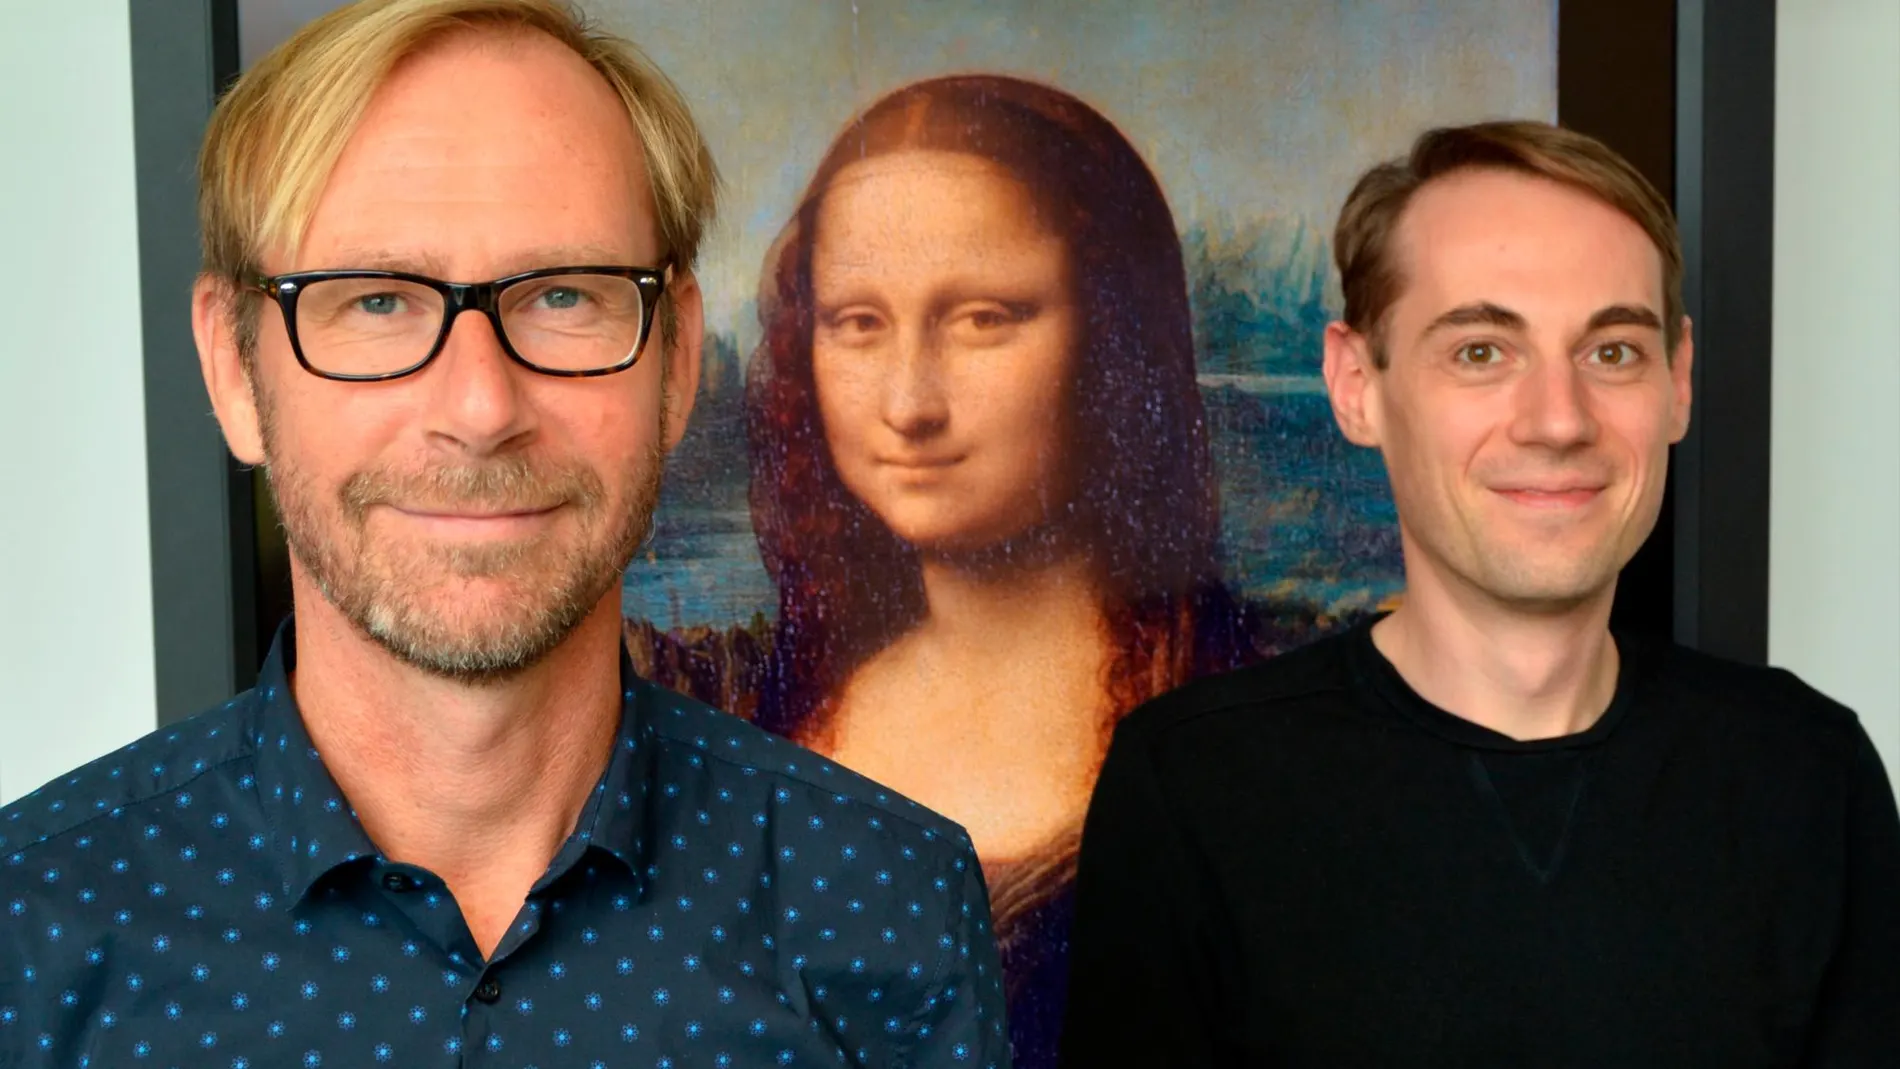 Los autores del estudio, Gernot Horstmann y Sebastian Loth, frente al cuadro de Da Vinci / ekvv.uni-bielefeld.de